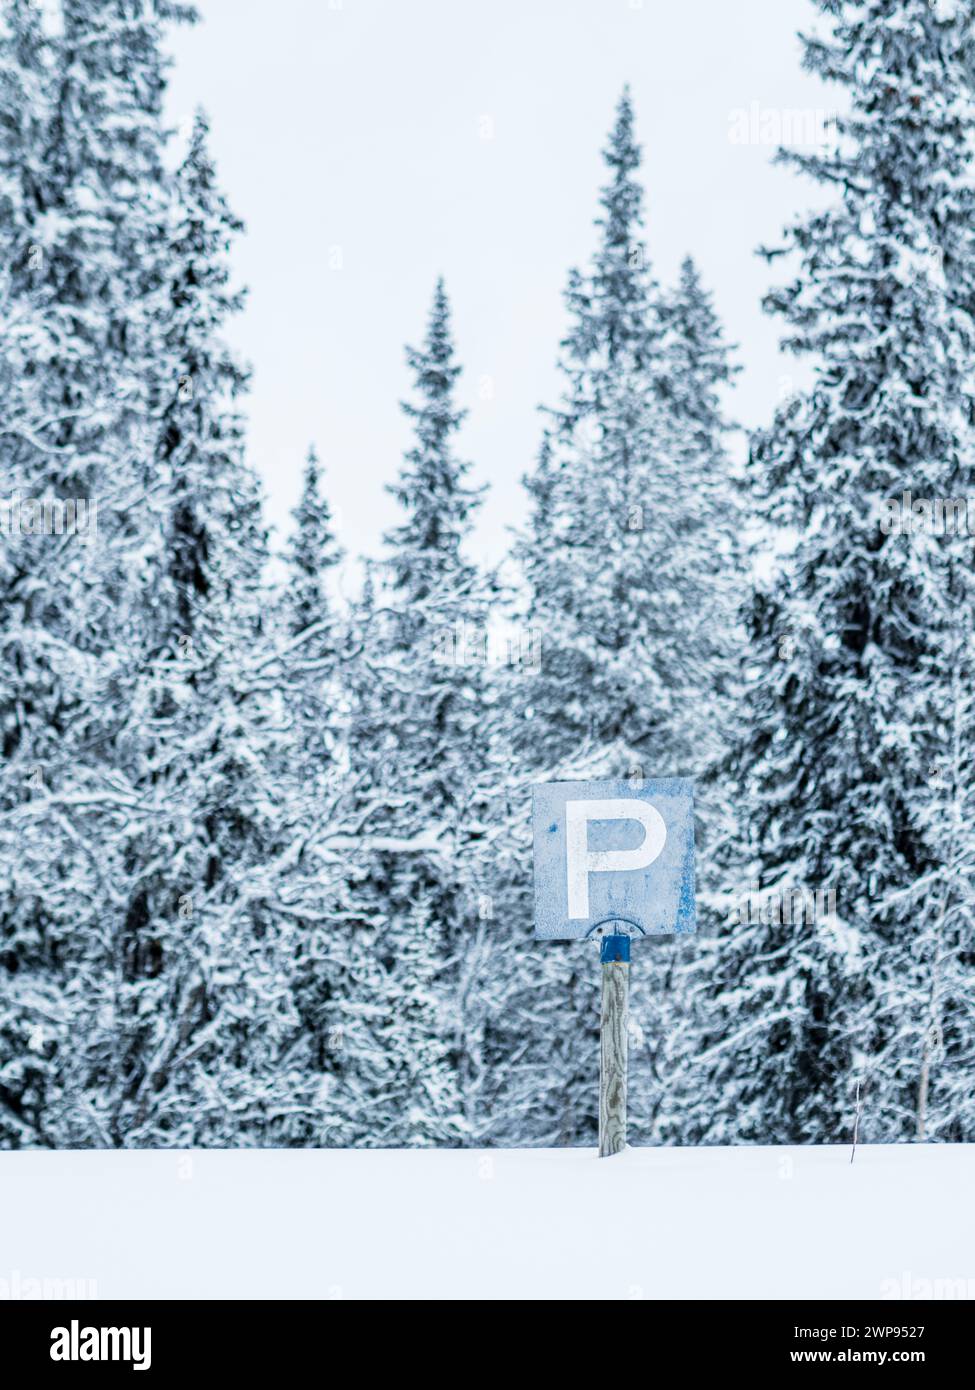 Un panneau de stationnement se dresse bien en vue au milieu d'un vaste champ enneigé, entouré d'un paysage hivernal de neige blanche et d'arbres nus. Banque D'Images